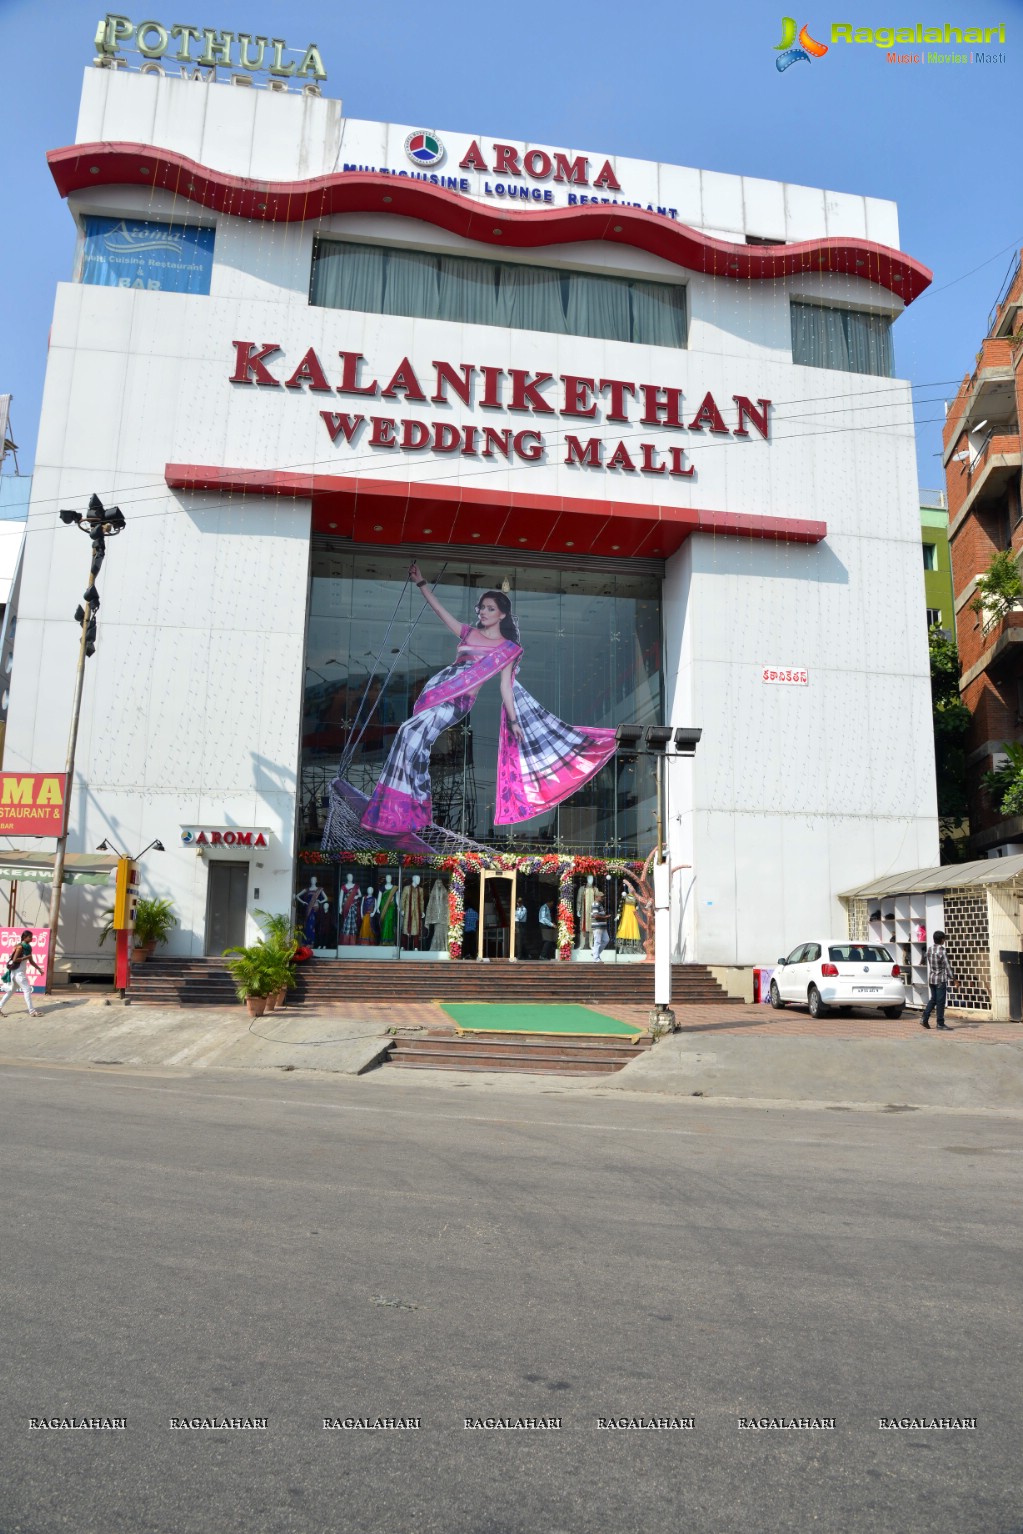 Ram-Leela Promotion at Kalanikethan, Hyderabad	